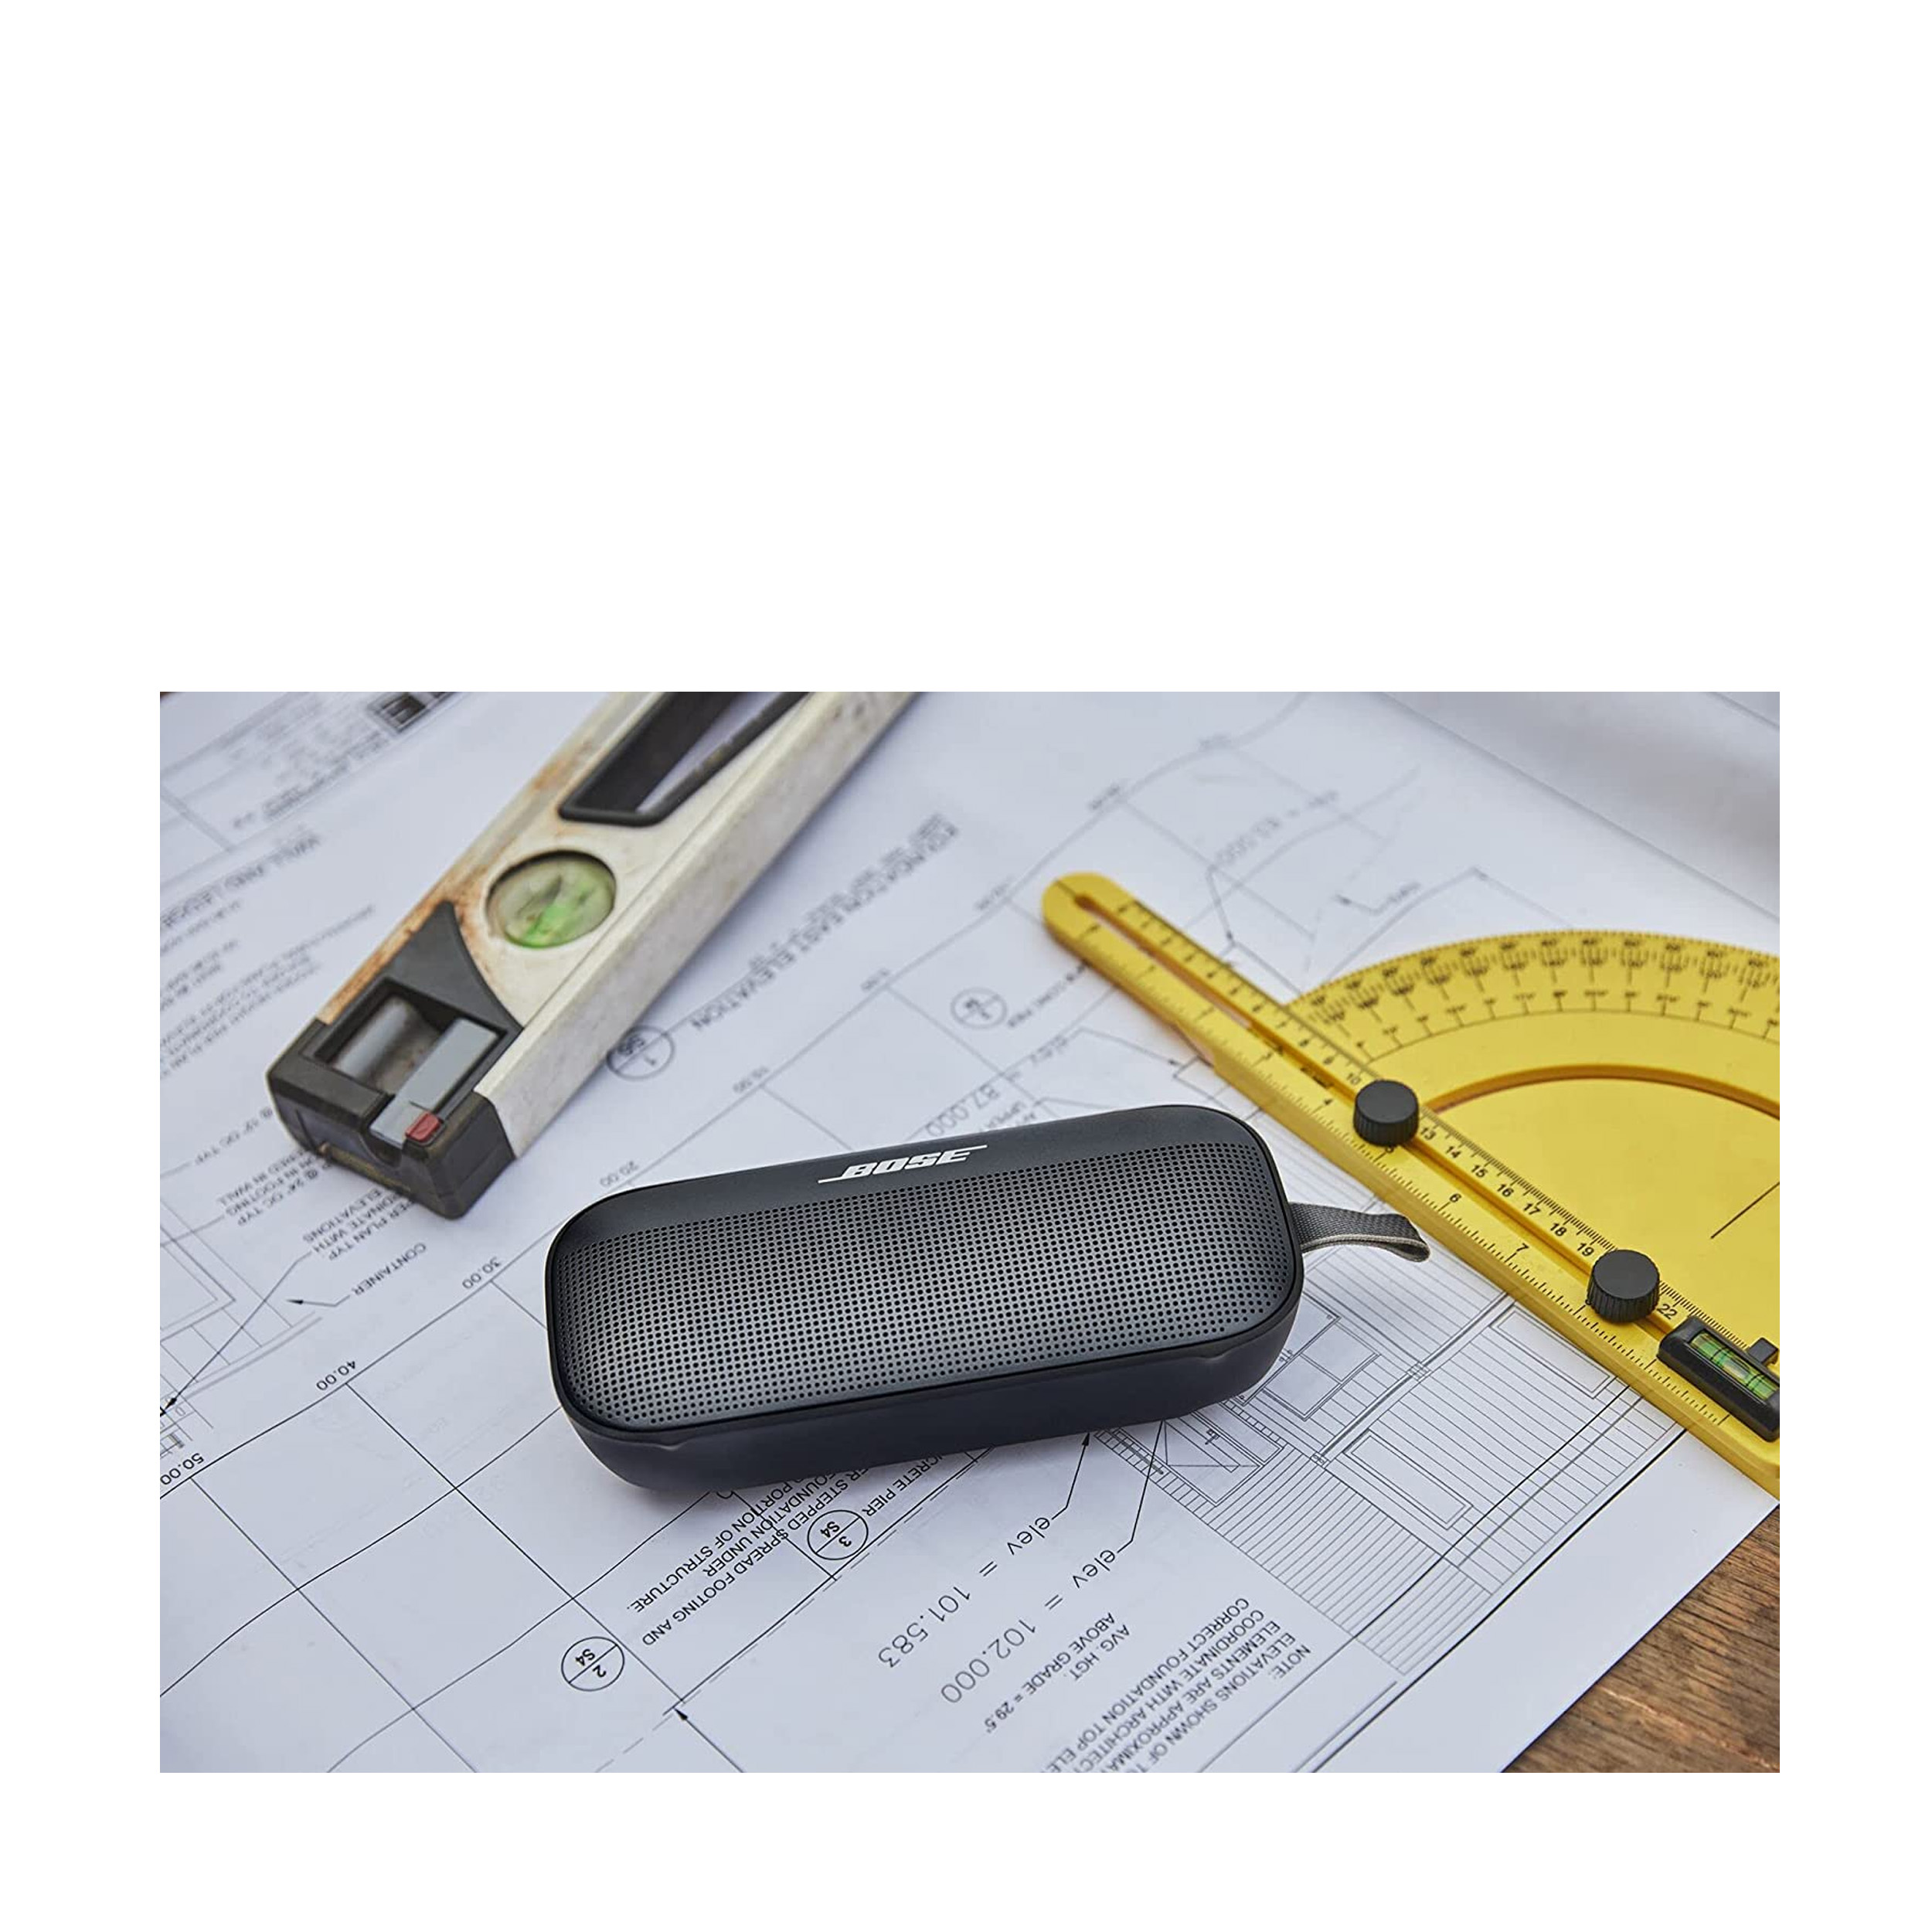 Bose SoundLink Flex Altavoz portátil Bluetooth, altavoz impermeable  inalámbrico para viajes al aire libre, color negro